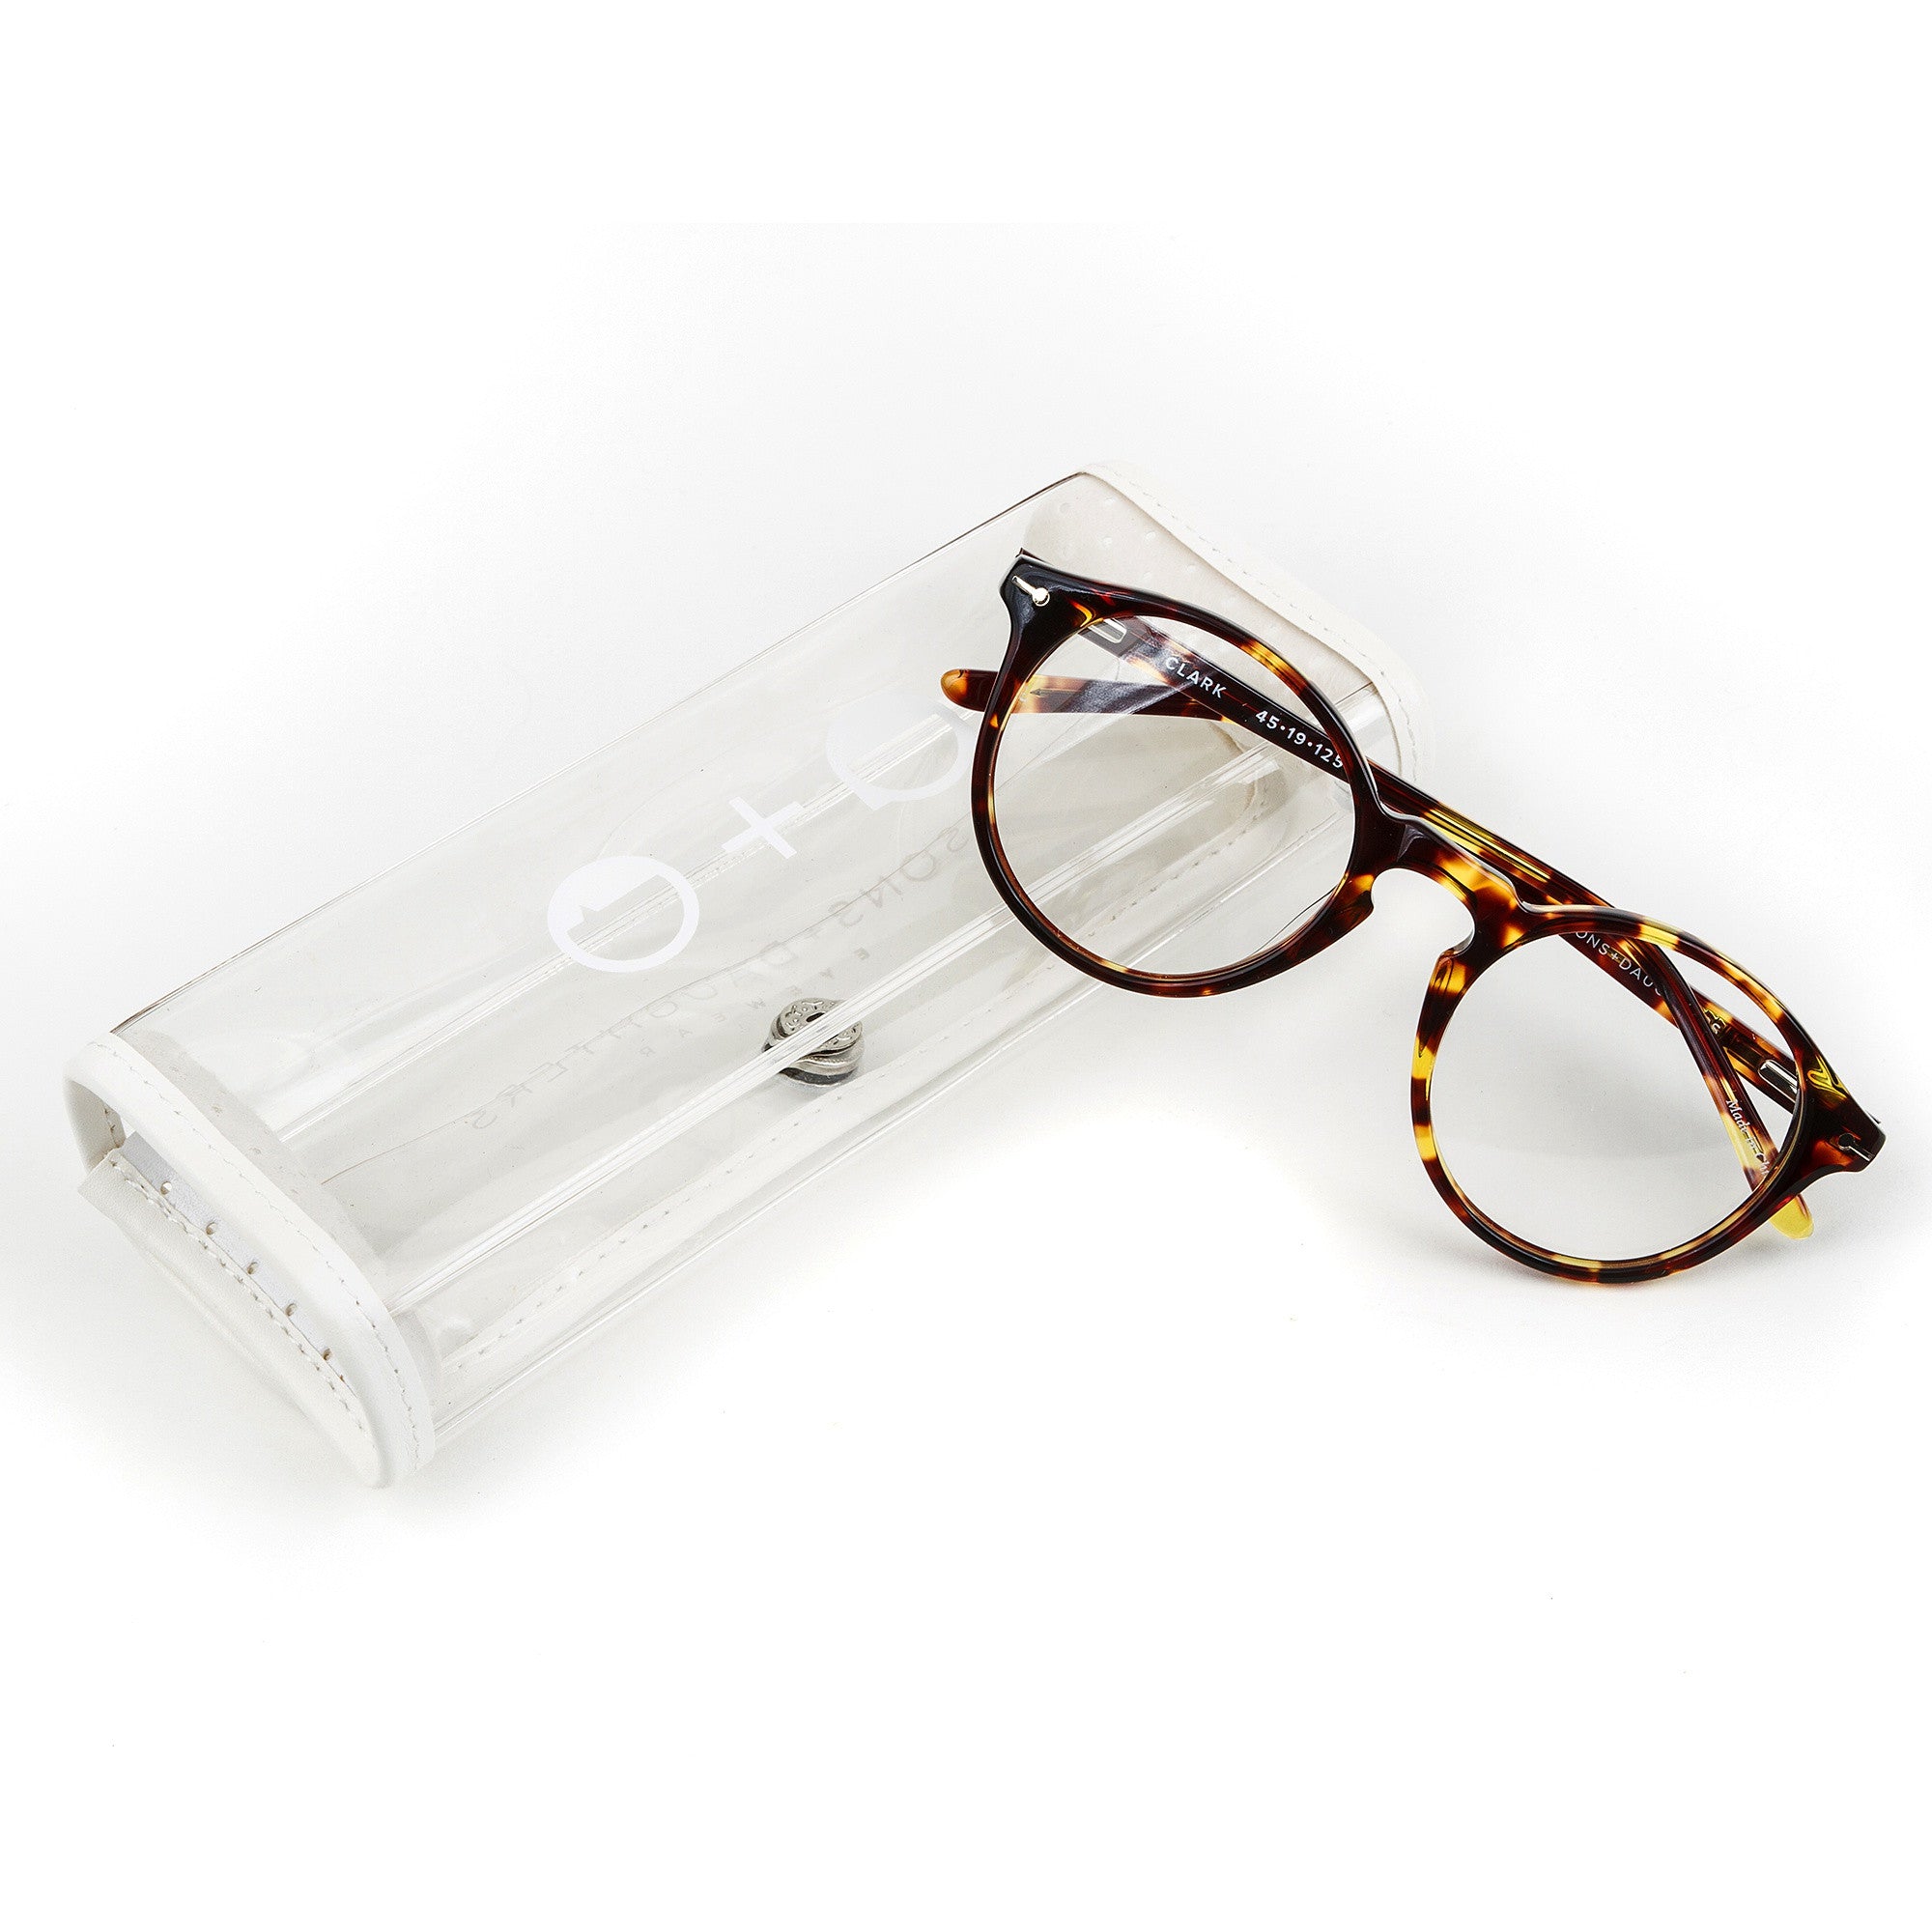 Clark' Tortoise Optical Glasses